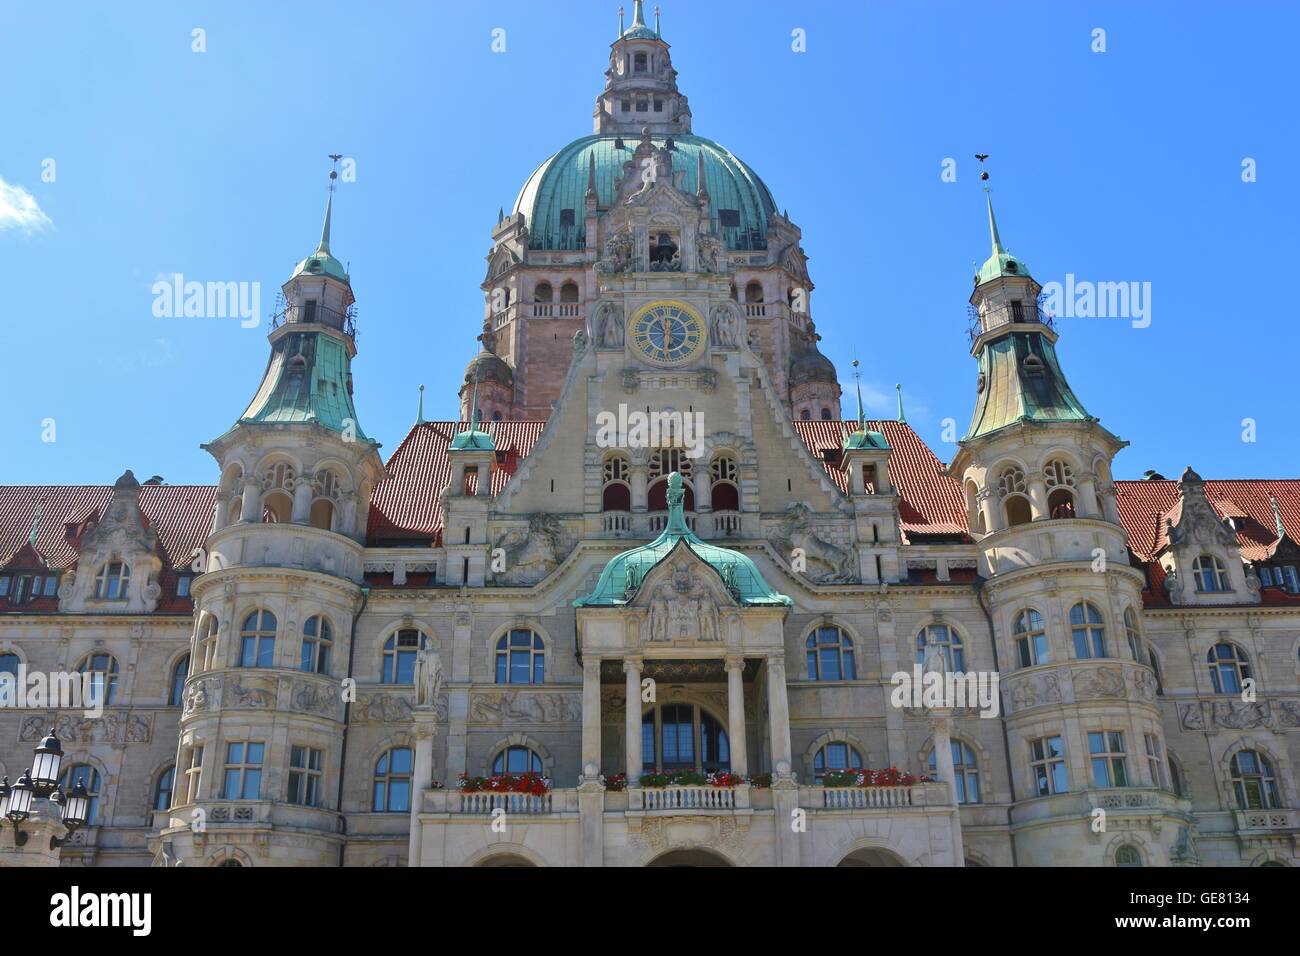 Das neue Rathaus in Hannover, Landeshauptstadt von Niedersachsen, Norddeutschland. Stockfoto